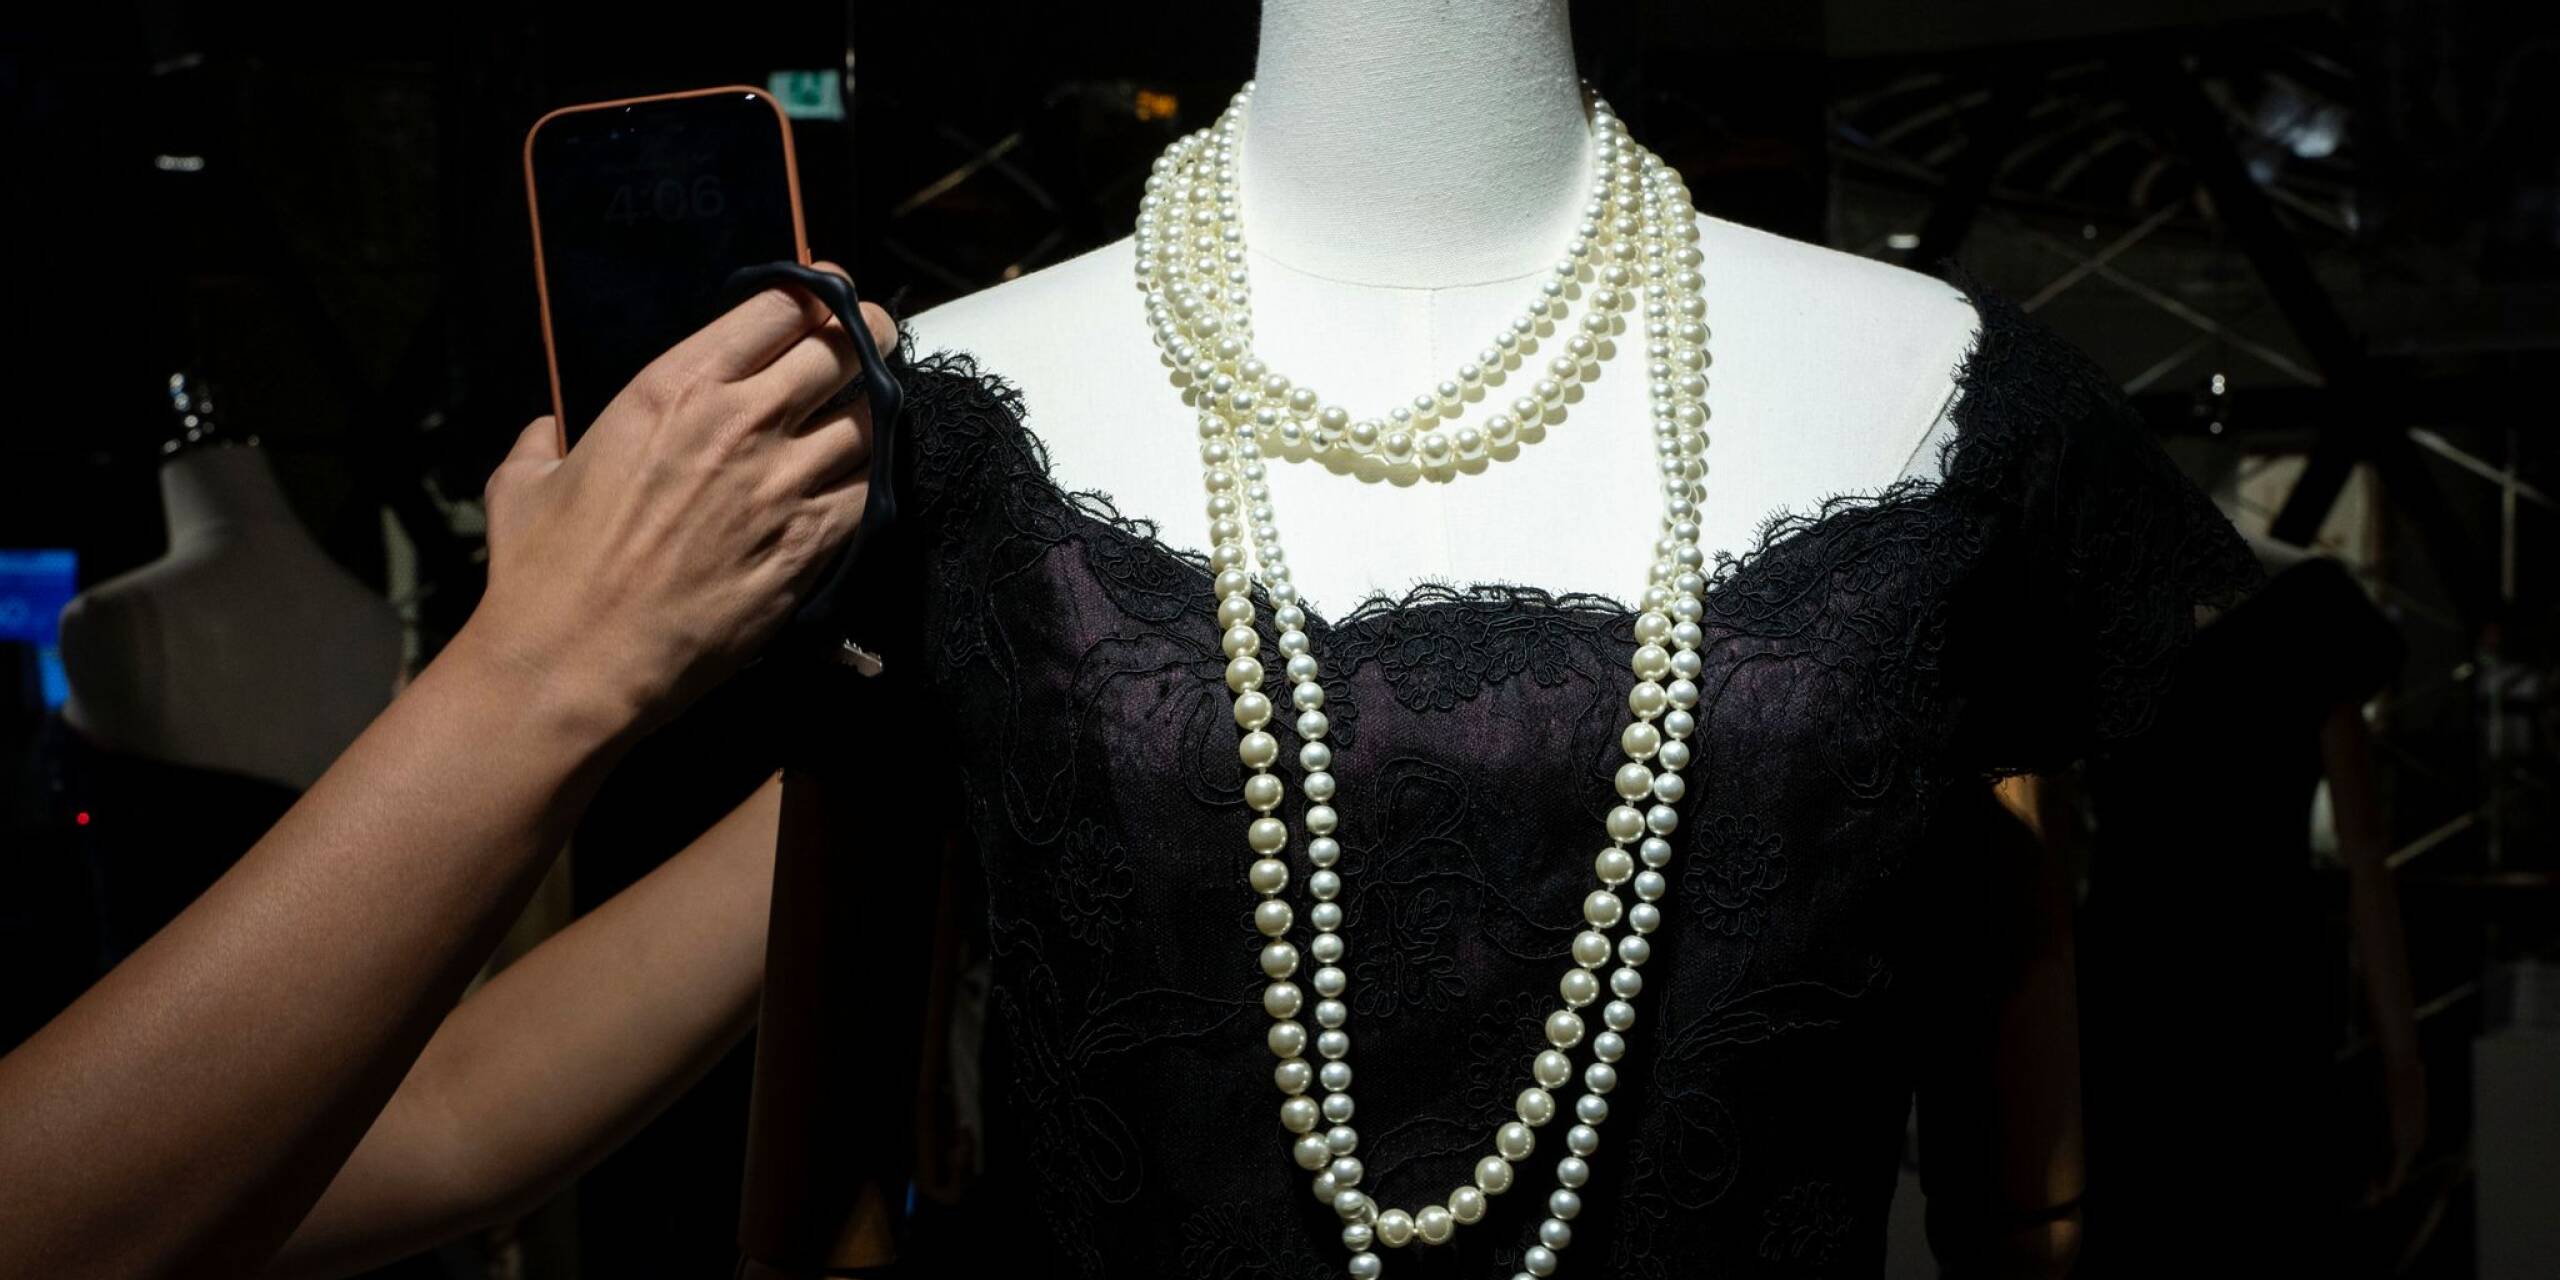 Wirbel um ein Kleid, das mehr ist als Seide und Spitze: Prinzessin Diana trug dieses Abendkleid im Jahr 1987, jetzt soll es in Hongkong versteigert werden. Für einen stolzen Preis: Das Kleid ist auf 200.000 bis 400.000 US-Dollar geschätzt.